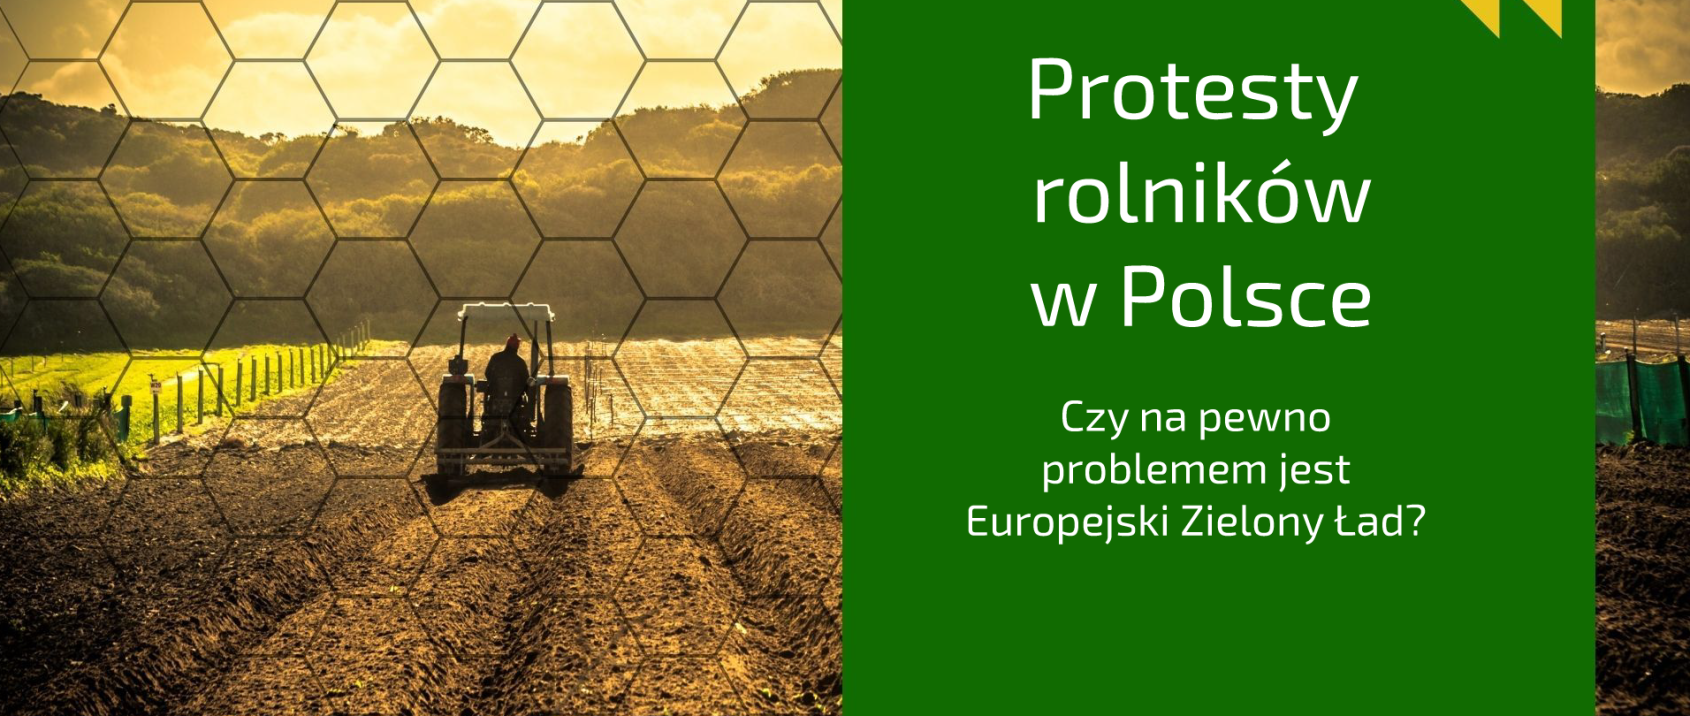 Protesty rolników w Polsce. Czy na pewno chodzi o politykę UE? [KOMENTARZ]